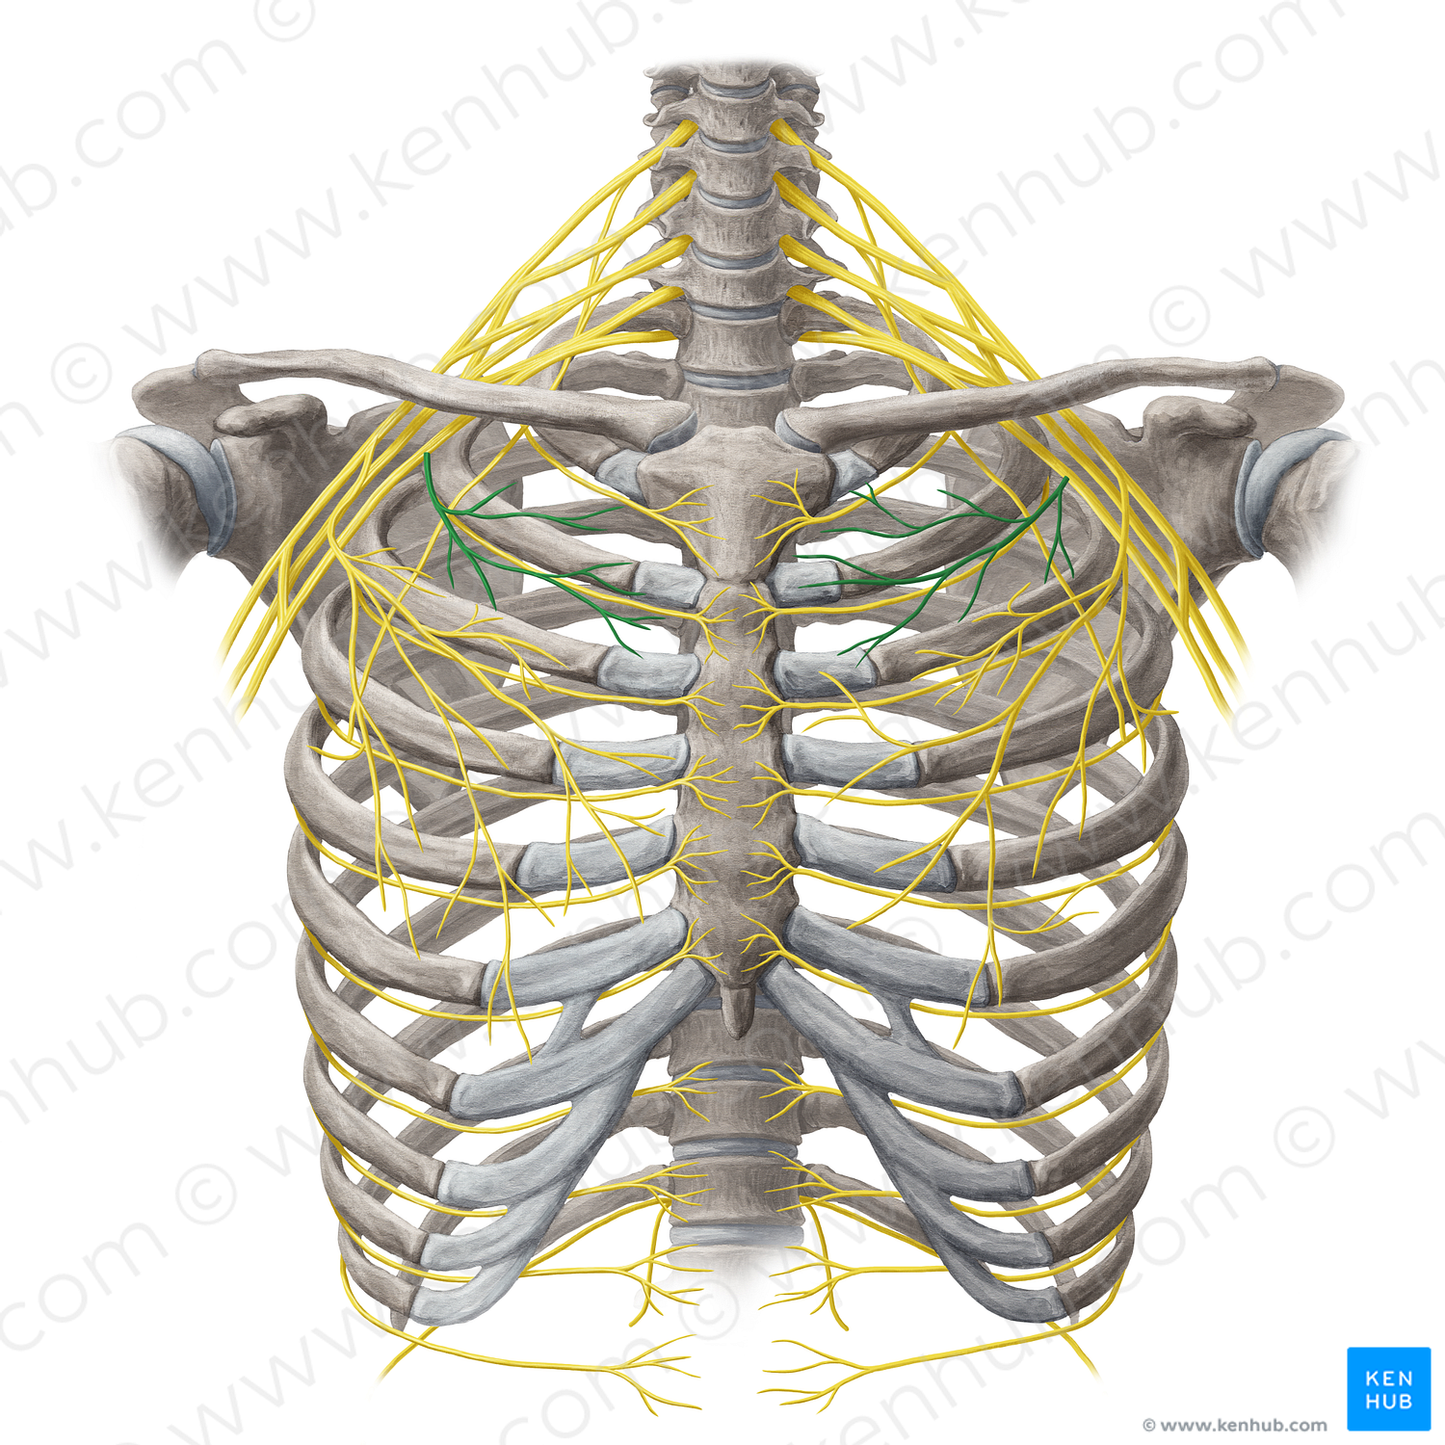 Medial pectoral nerve (#6654)